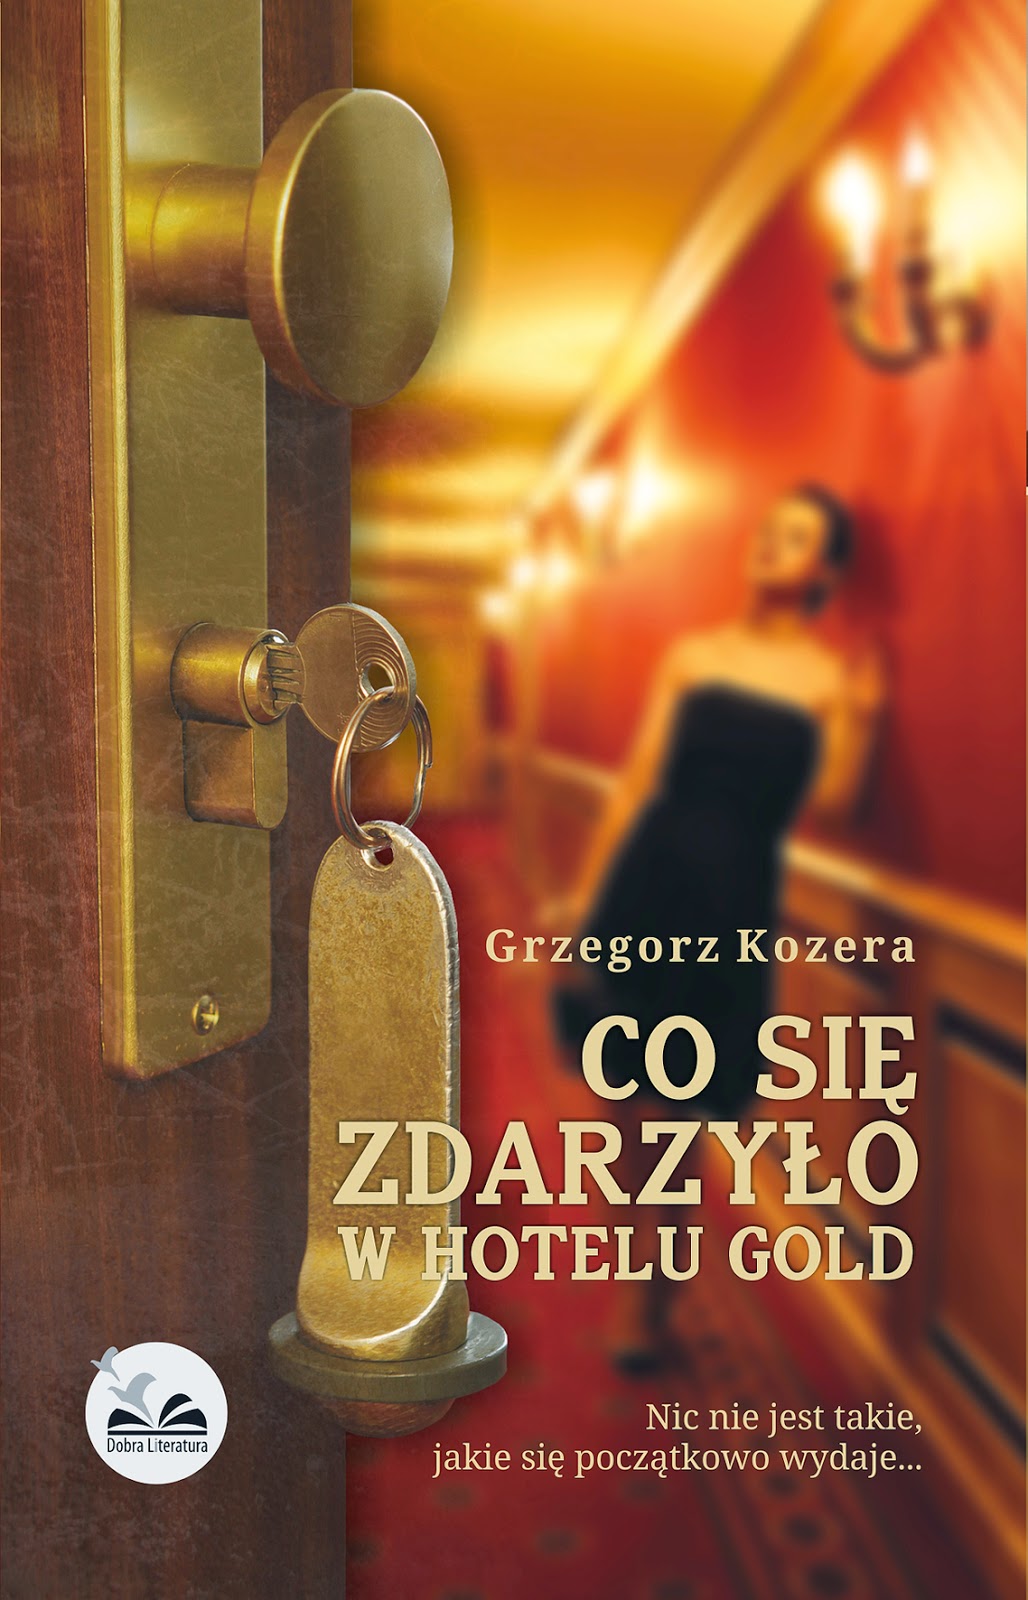 http://www.dobraliteratura.pl/zapowiedz/160/co_sie_zdarzylo_w_hotelu_gold.html